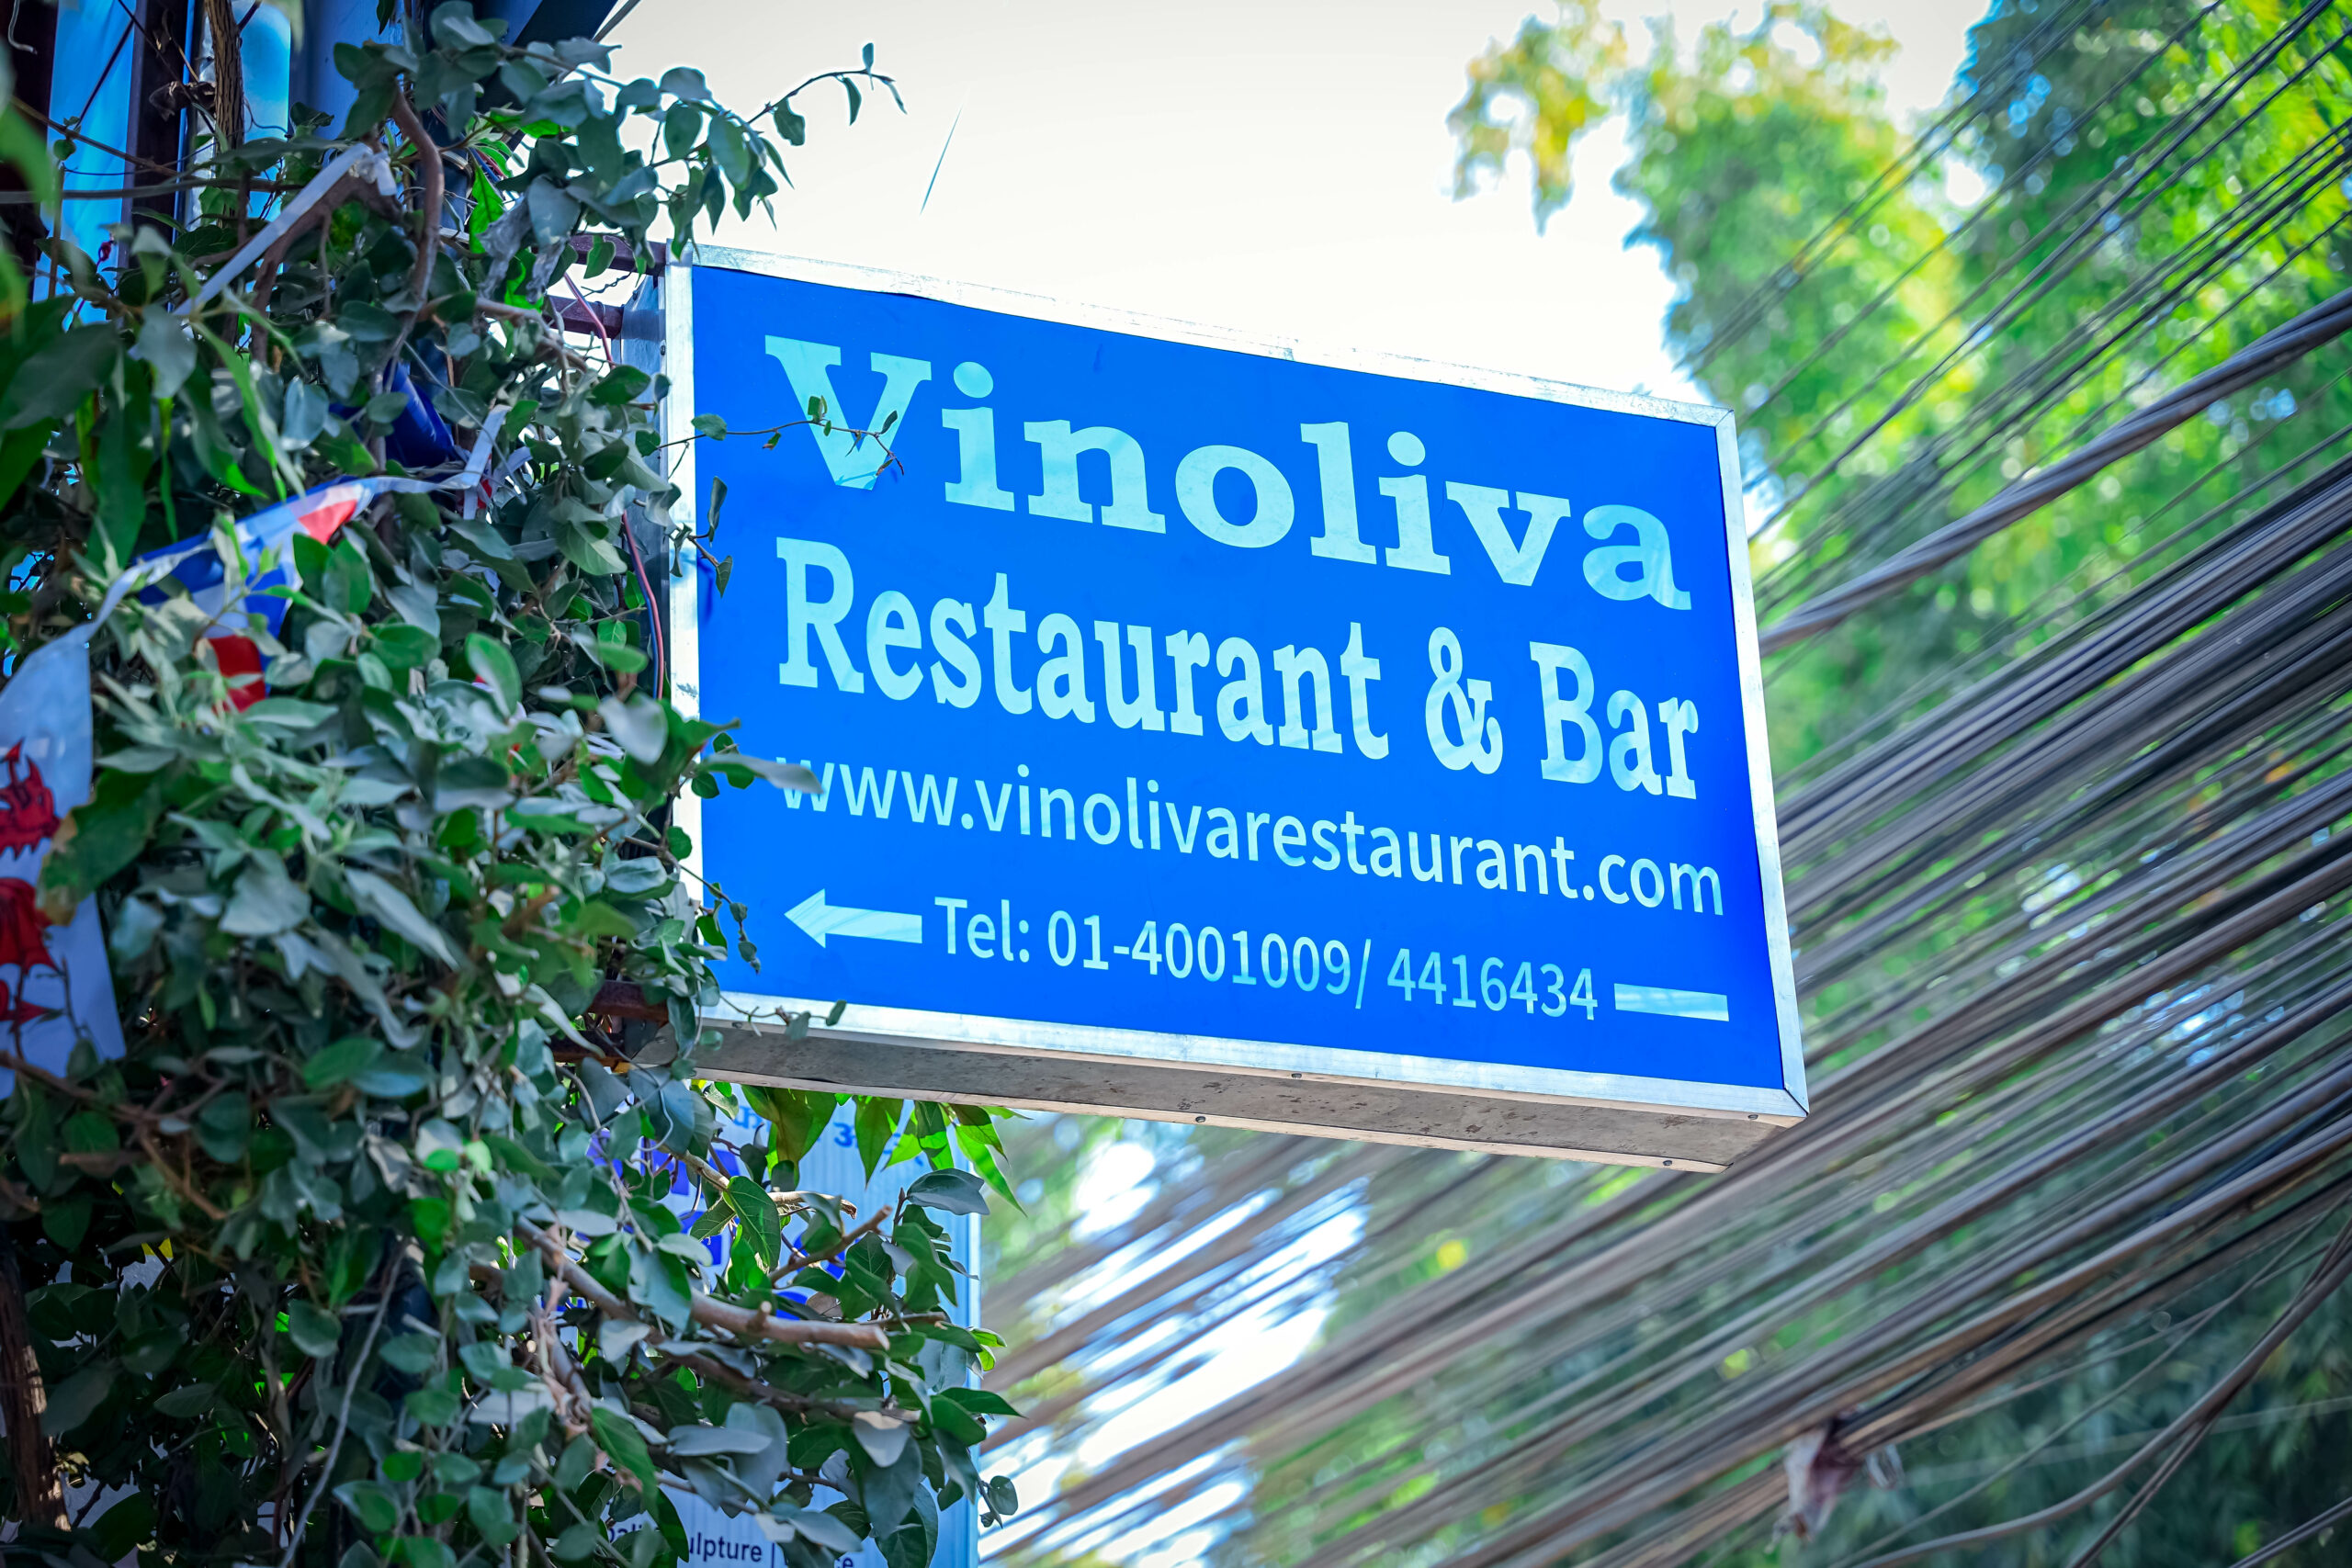 Vinoliva Restaurant & Bar